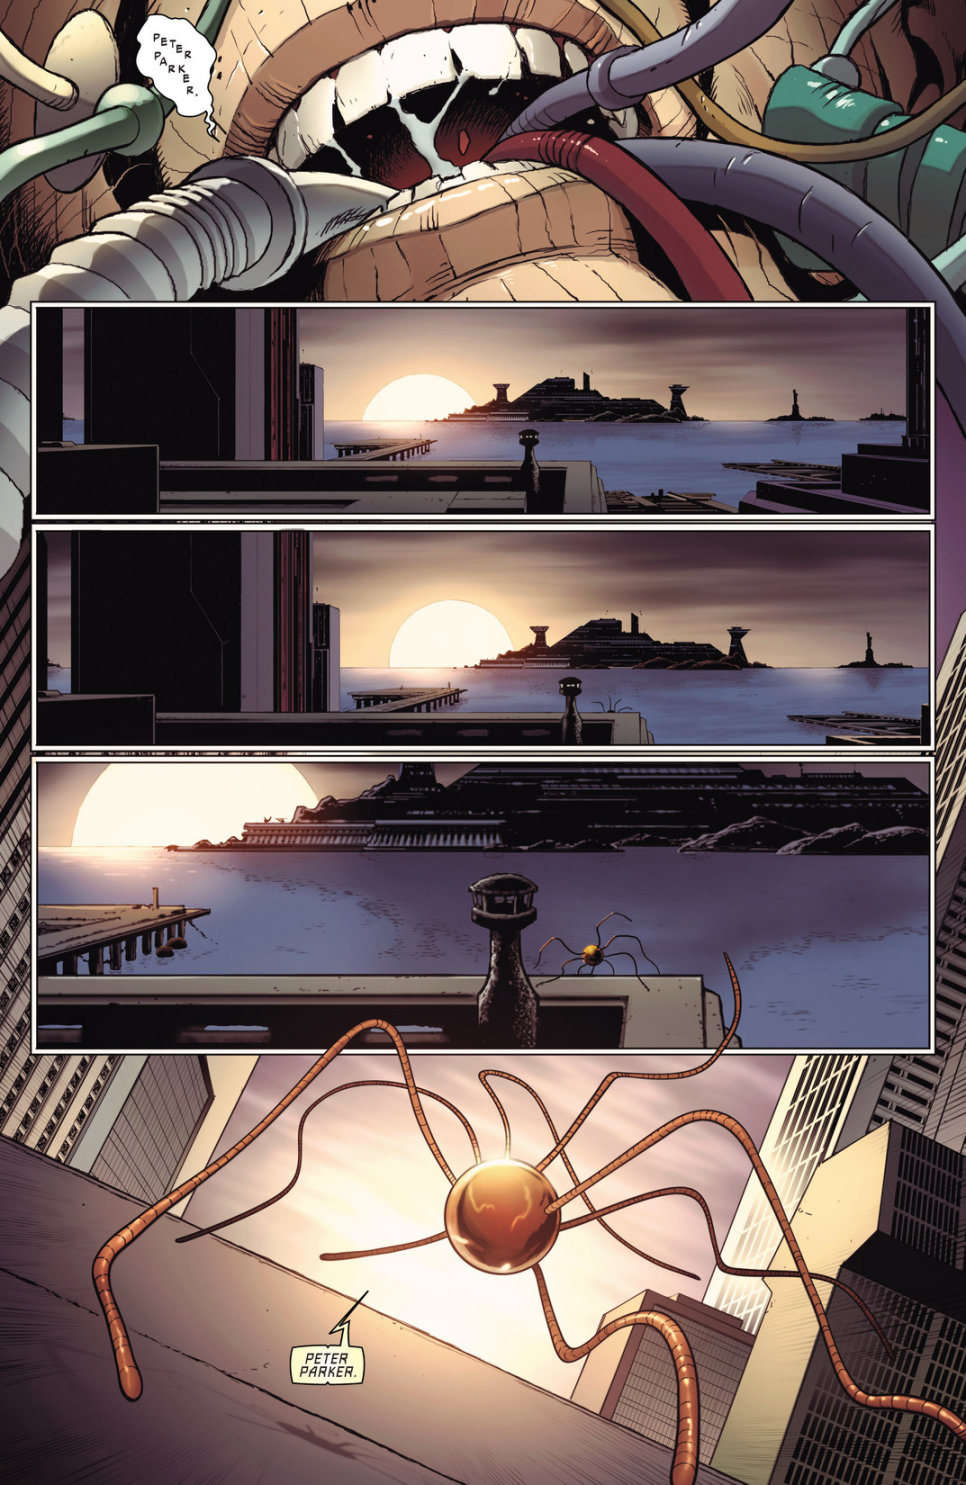 【影視動漫】神奇蜘蛛俠 #698 世界上最偉大的超級英雄之死！?-第4張